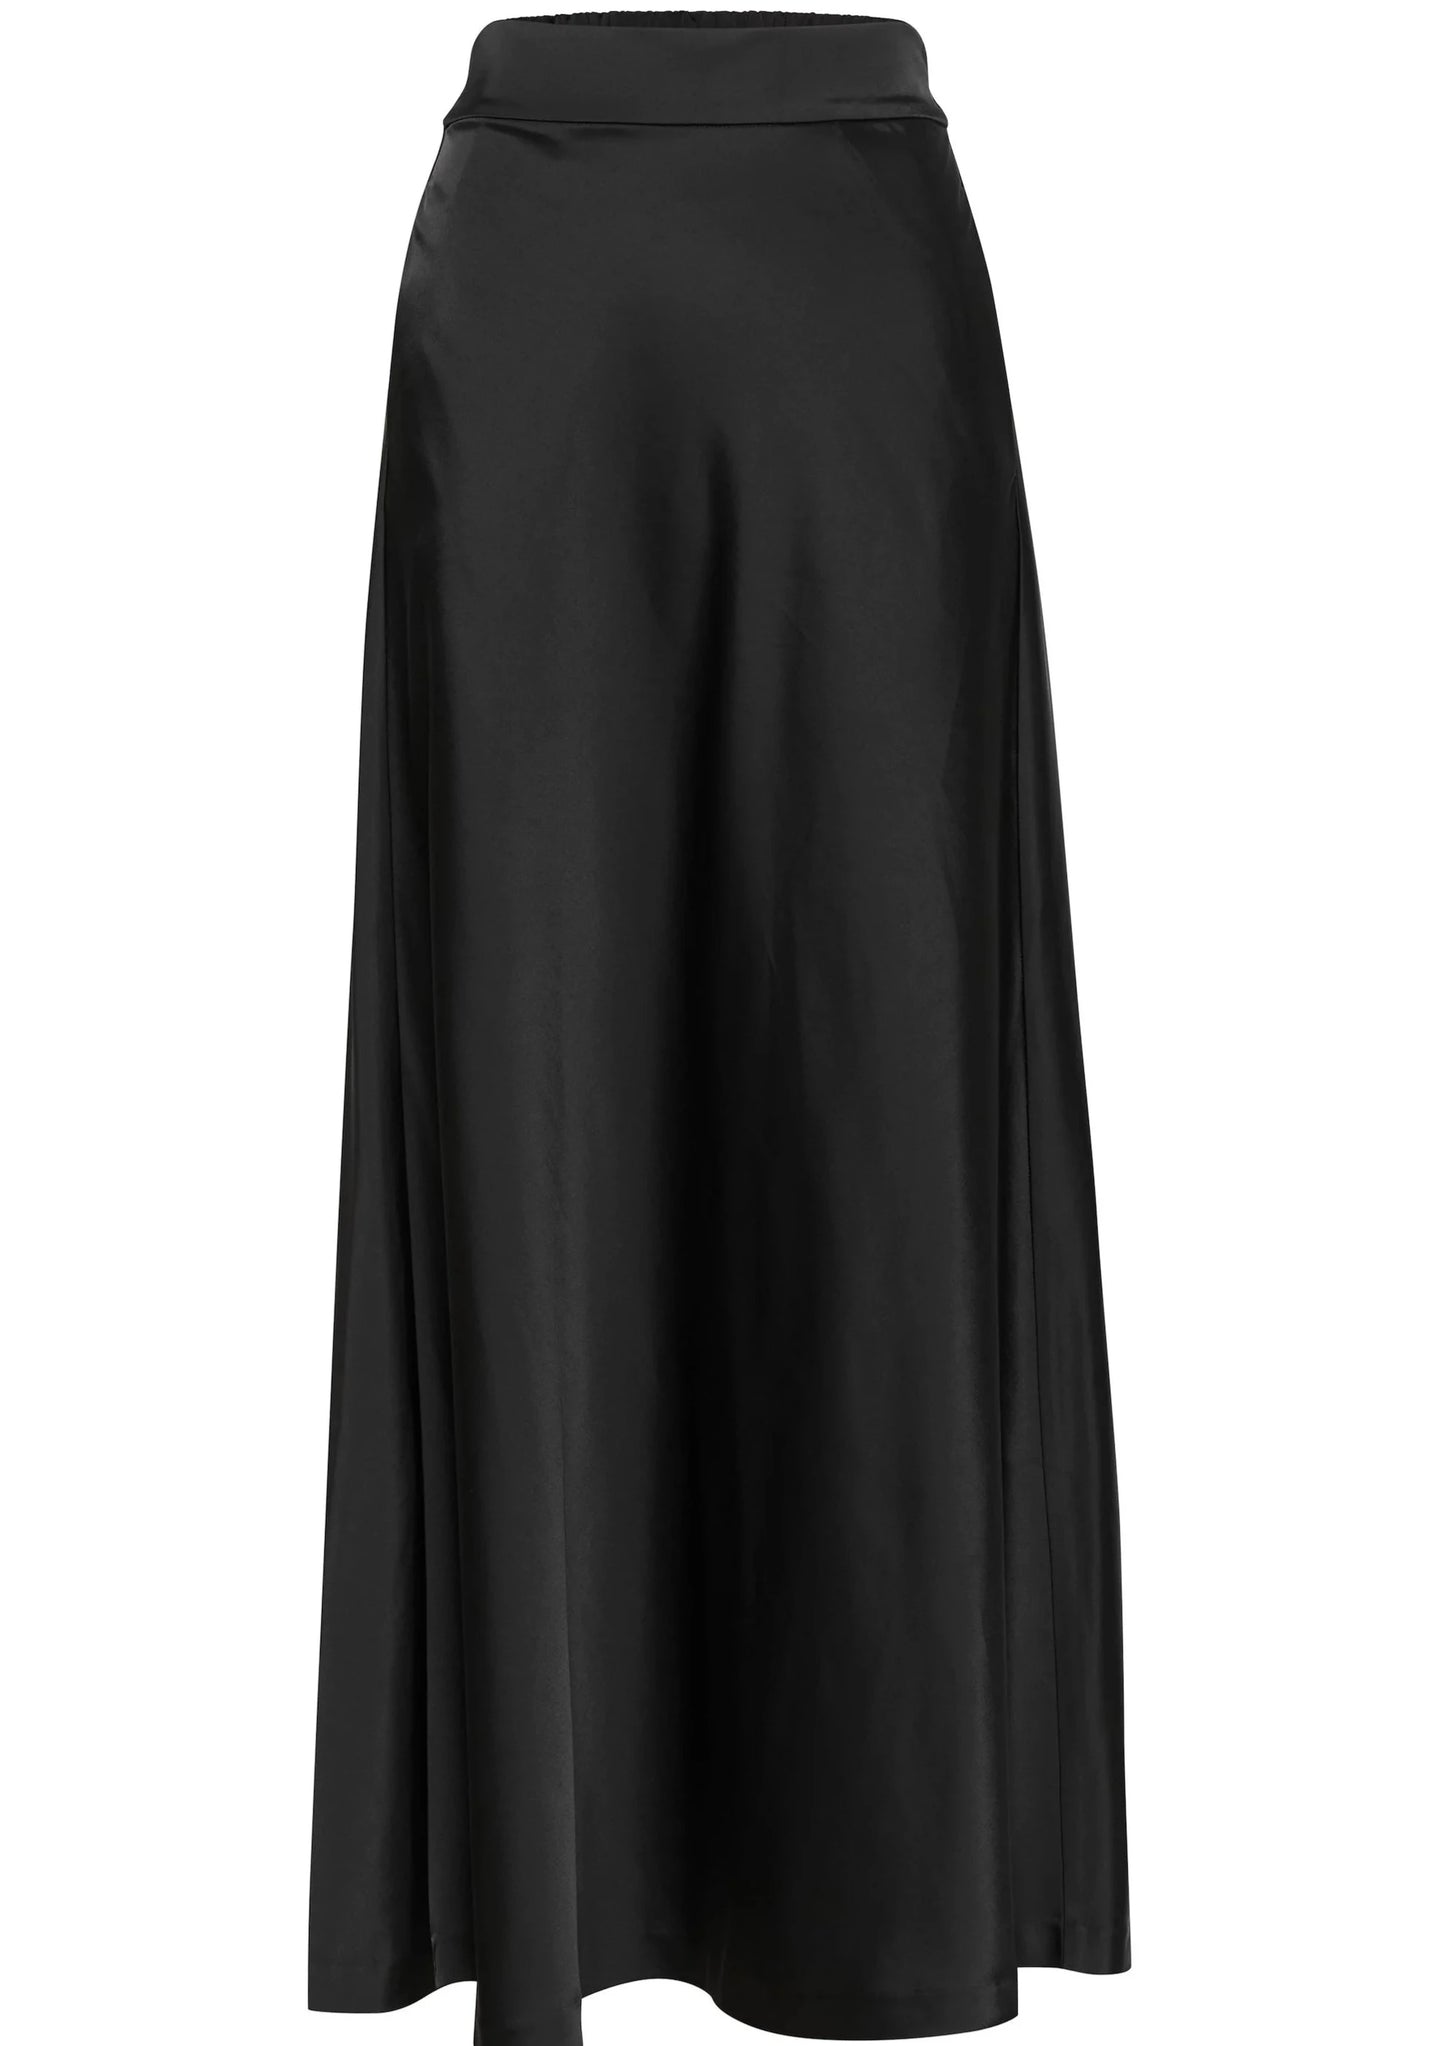 InWear Xilky Long Skirt Black